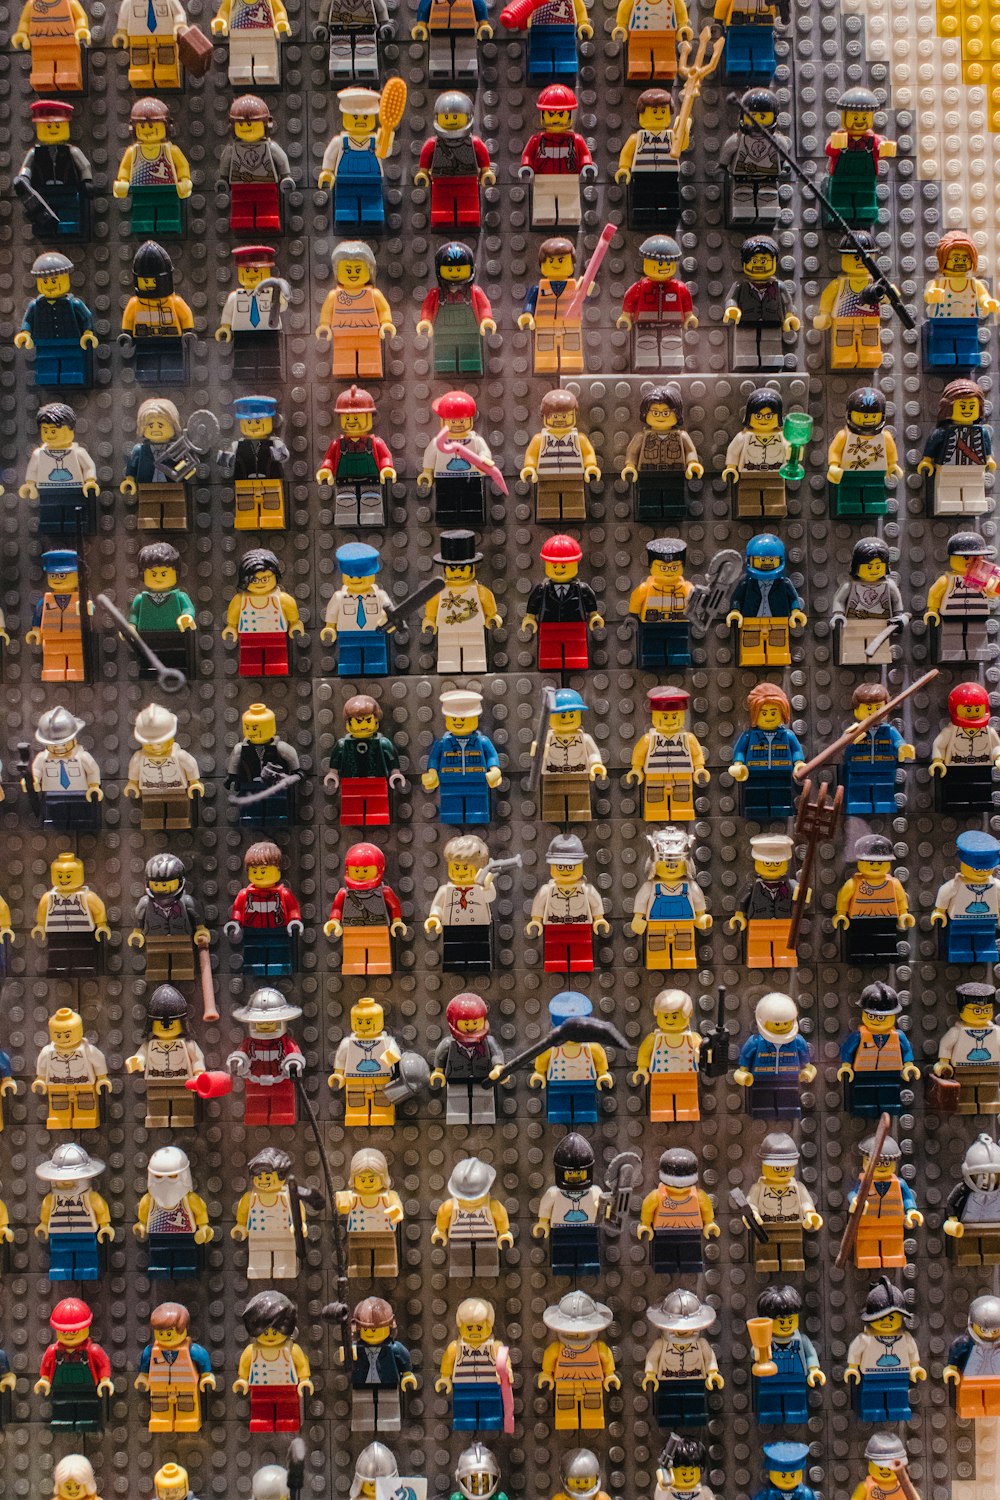 Ein großes Display von Legos in verschiedenen Farben und Größen